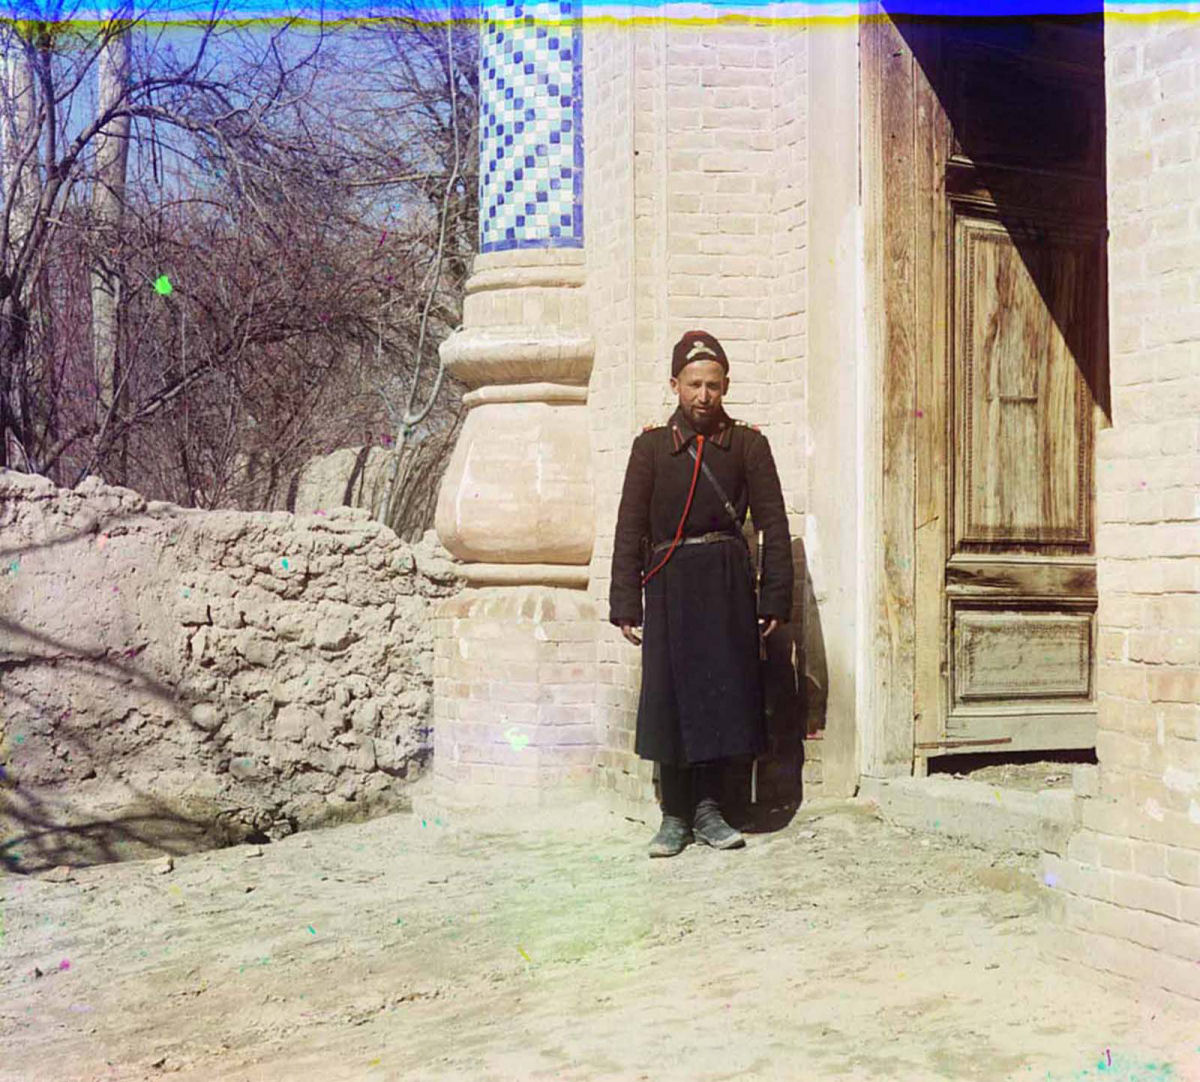 O Uzbequistão da era czarista capturado em raras fotos coloridas, entre 1907 e 1911 21